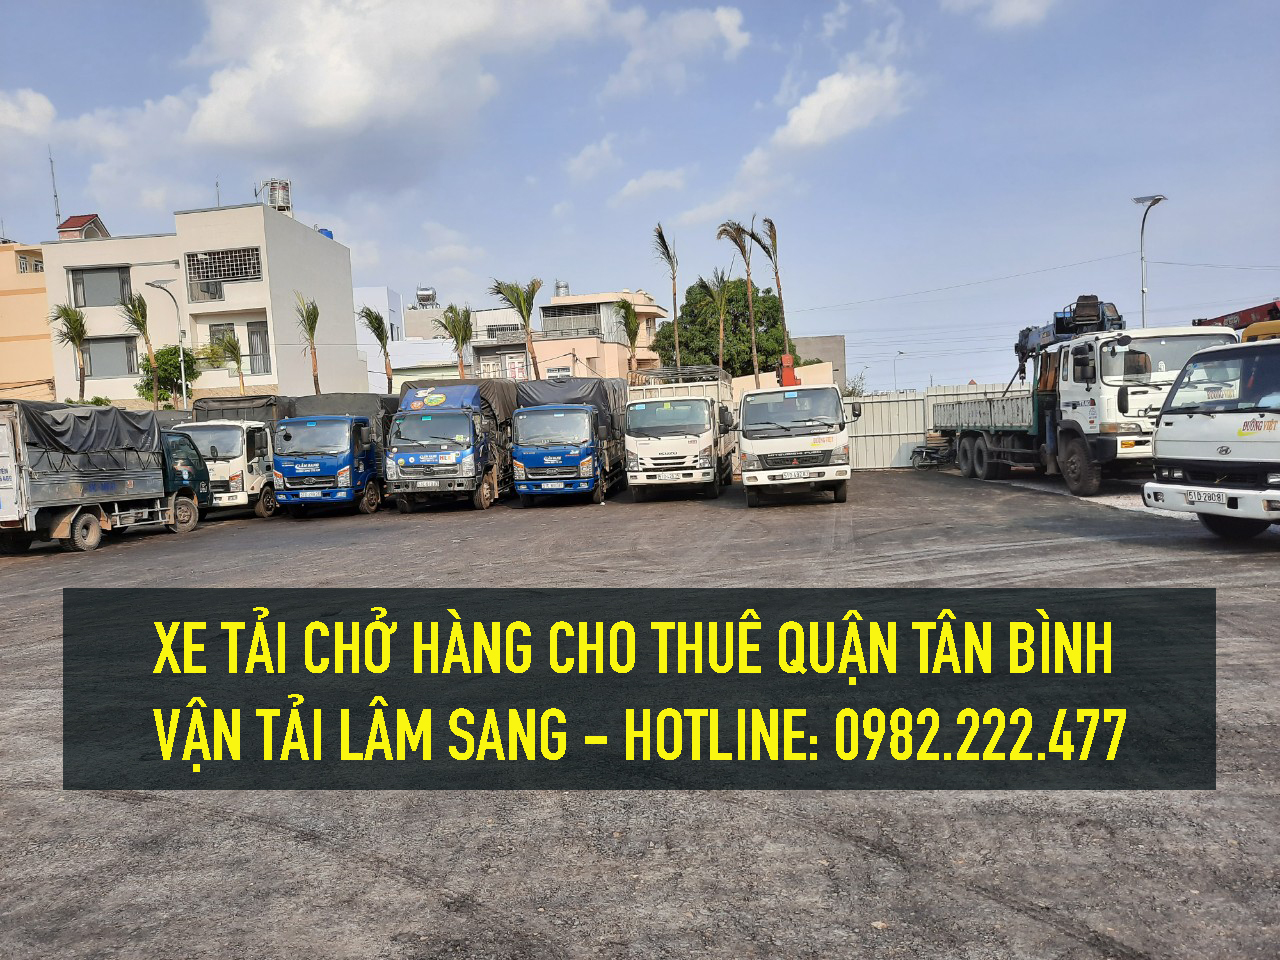 Xe tải nhỏ chot thuê Quận Tân Phú - Vận chuyển hàng hoá Sài Thành 24H